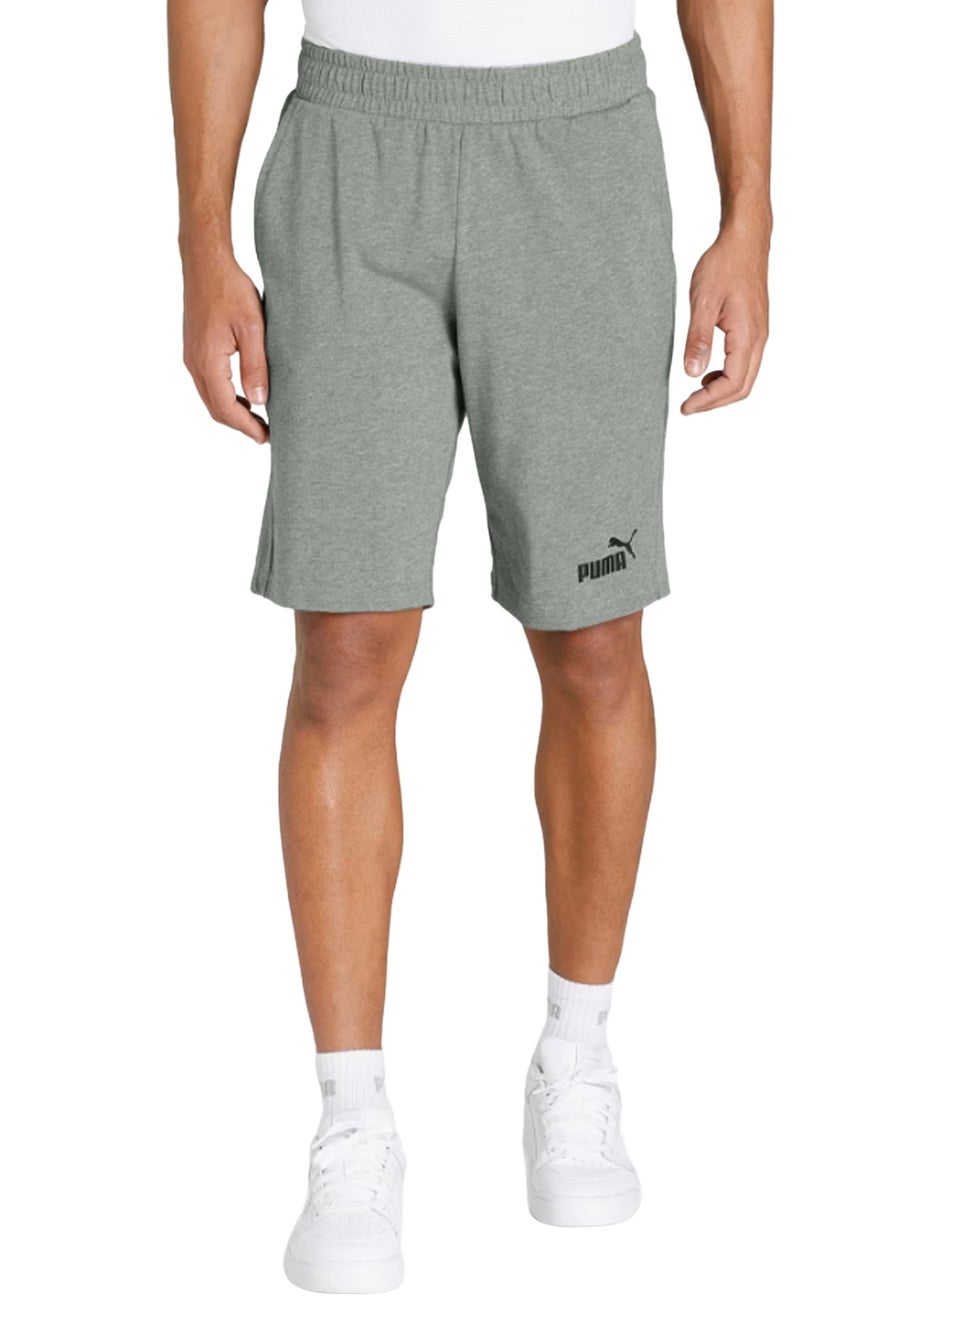 Puma Grey ESS Shorts